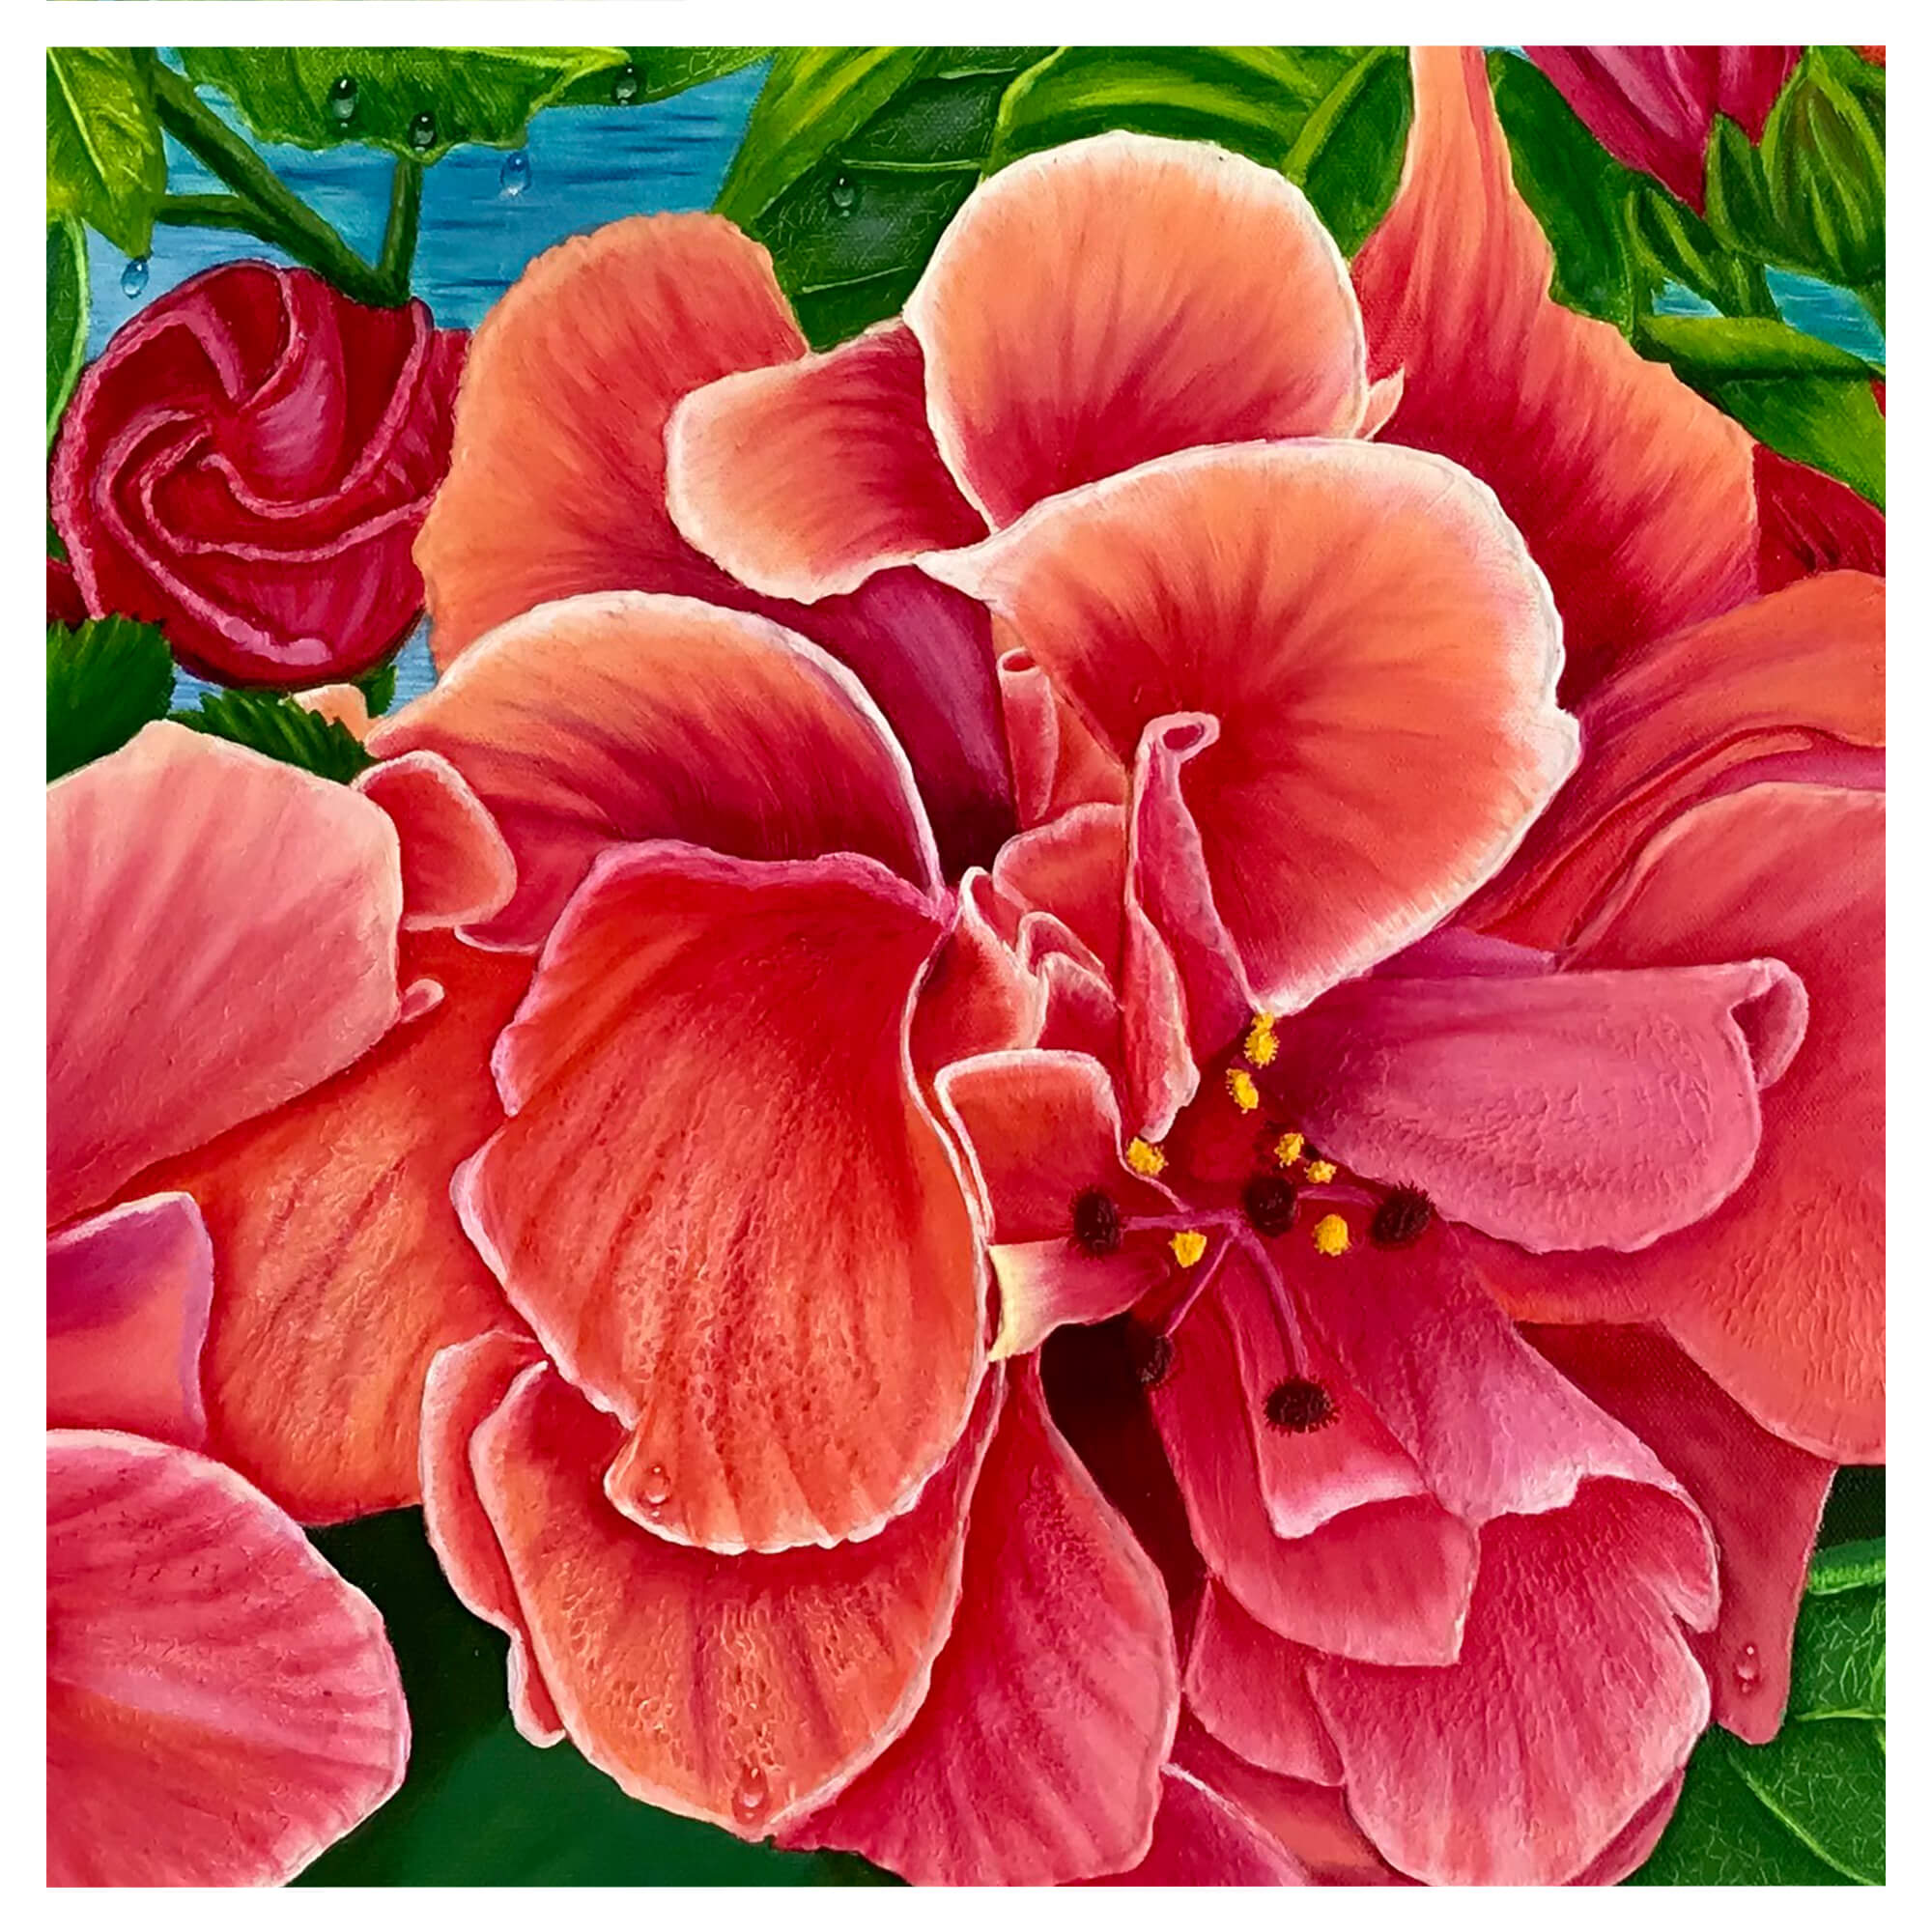 An illustration featuring a pink flower by hawaii artist Galina Lintz